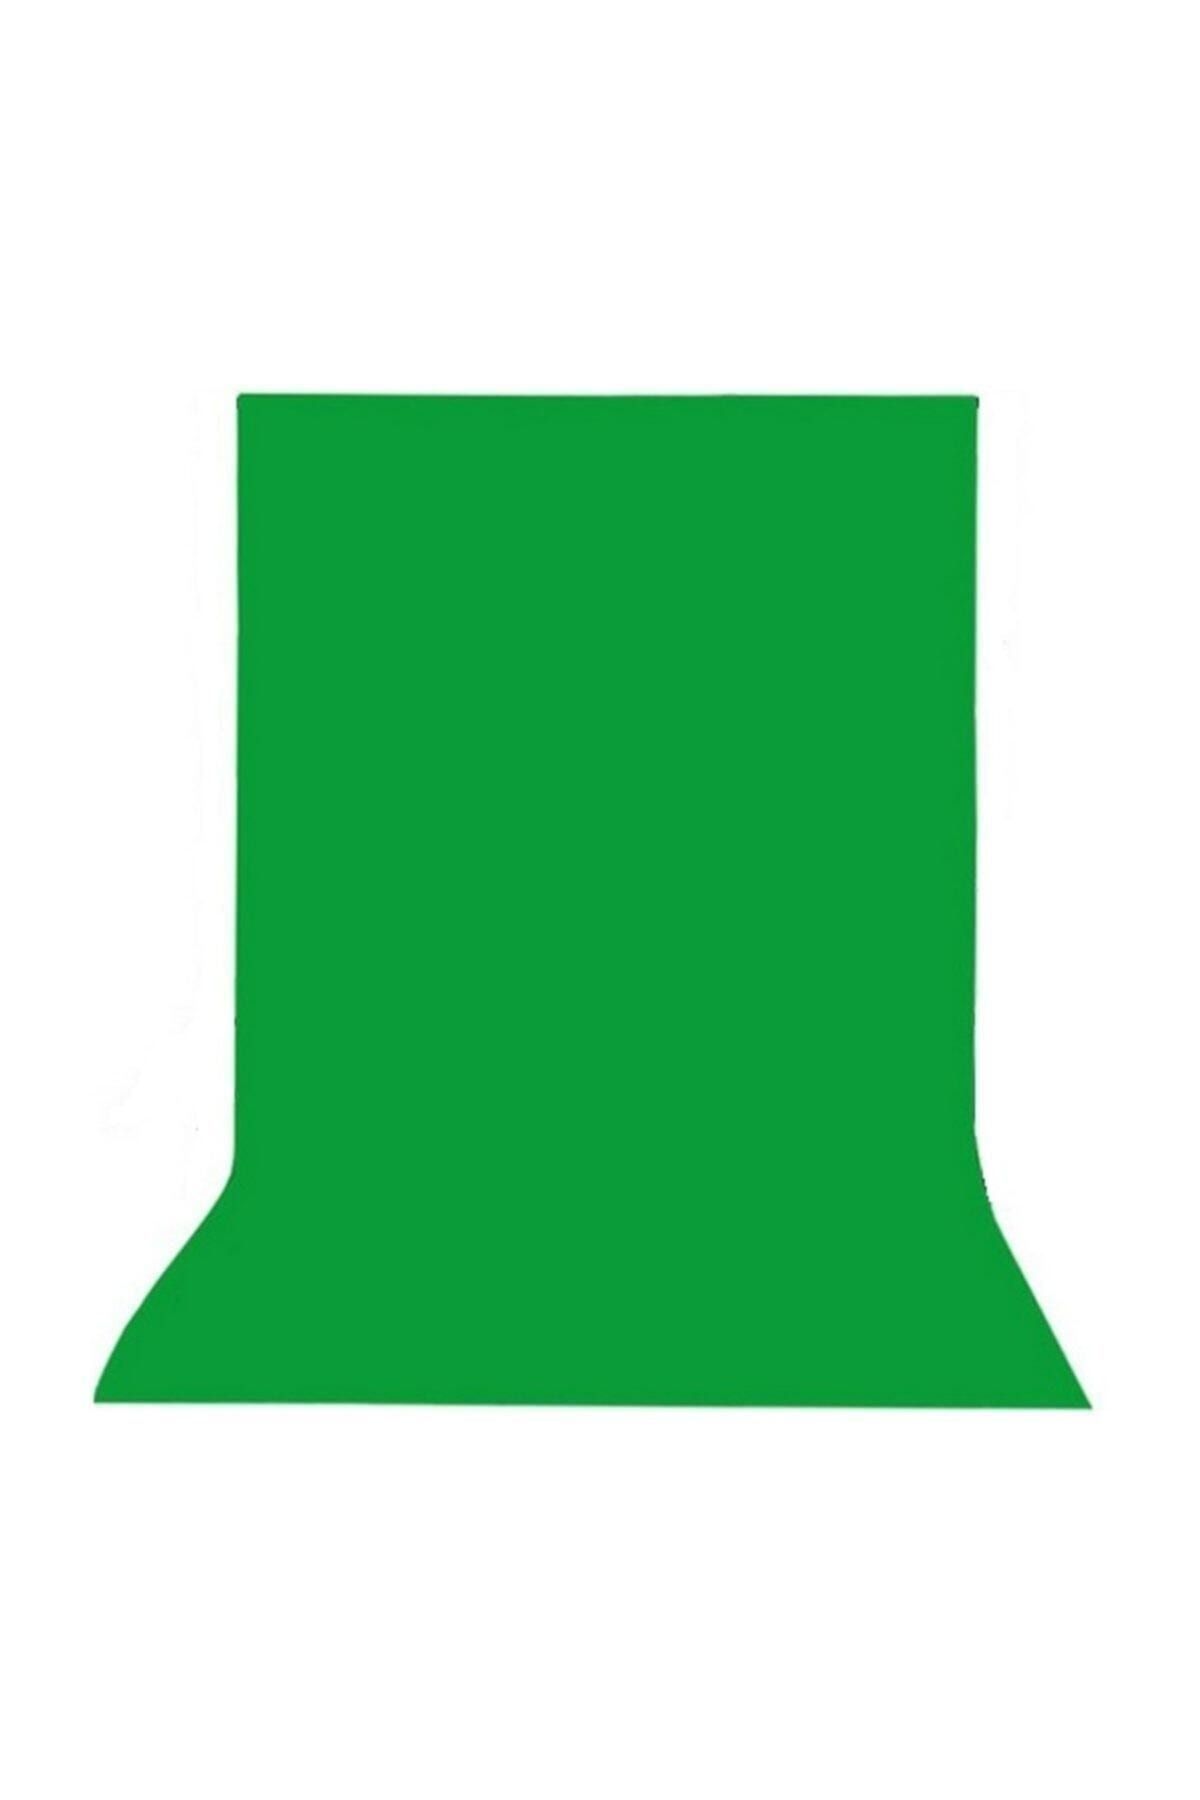 Efsane 200 X 160 cm Greenbox Chromakey Green Screen Yeşil Fon Perde Kumaş Yeşil Arkaplan